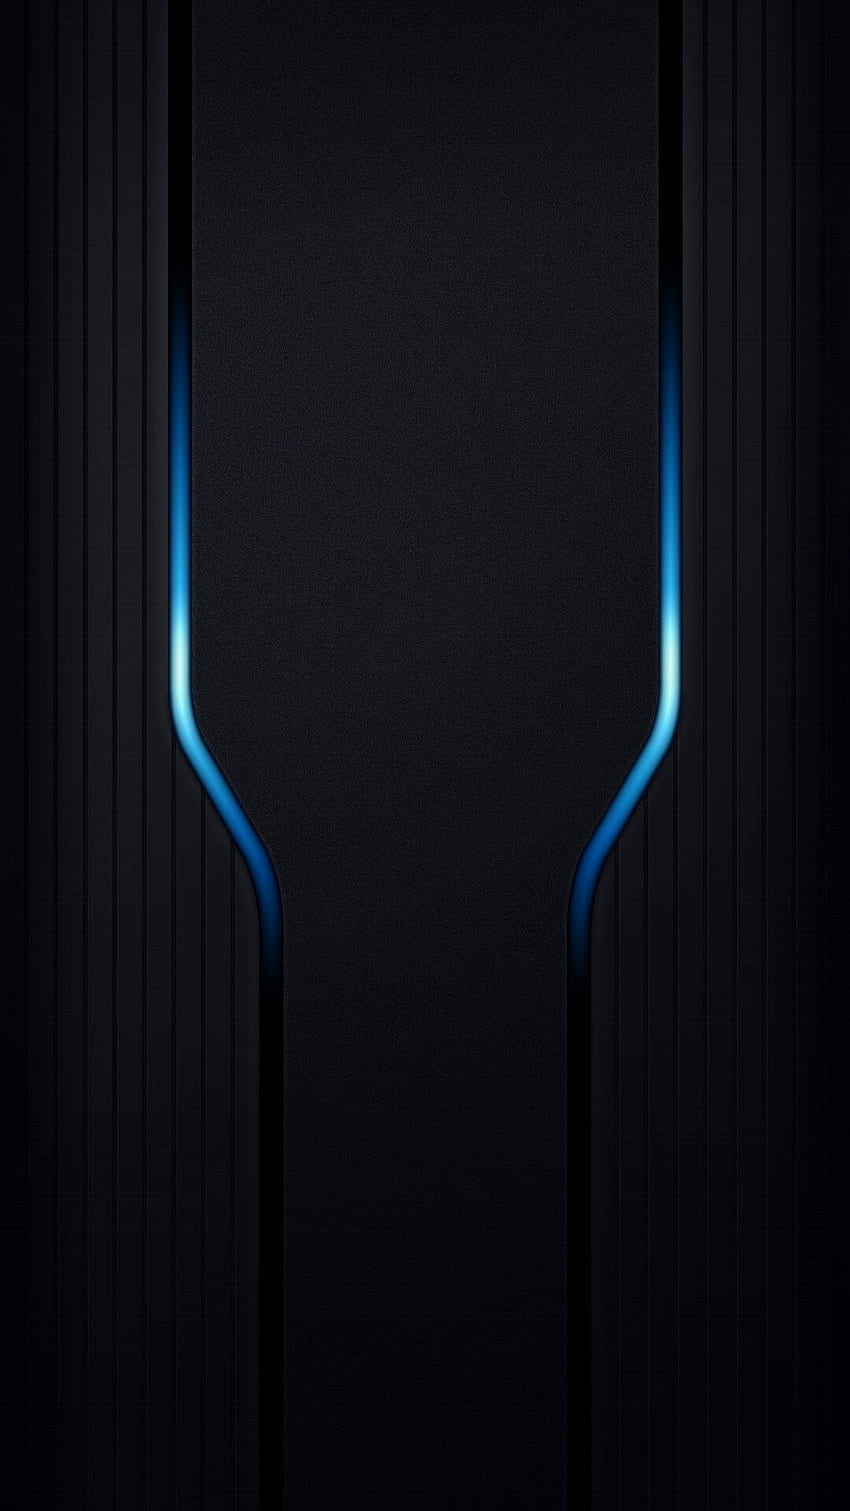 Black and Blue Gaming - , Latar Belakang Gaming Hitam dan Biru di Bat, Gamer Seluler wallpaper ponsel HD